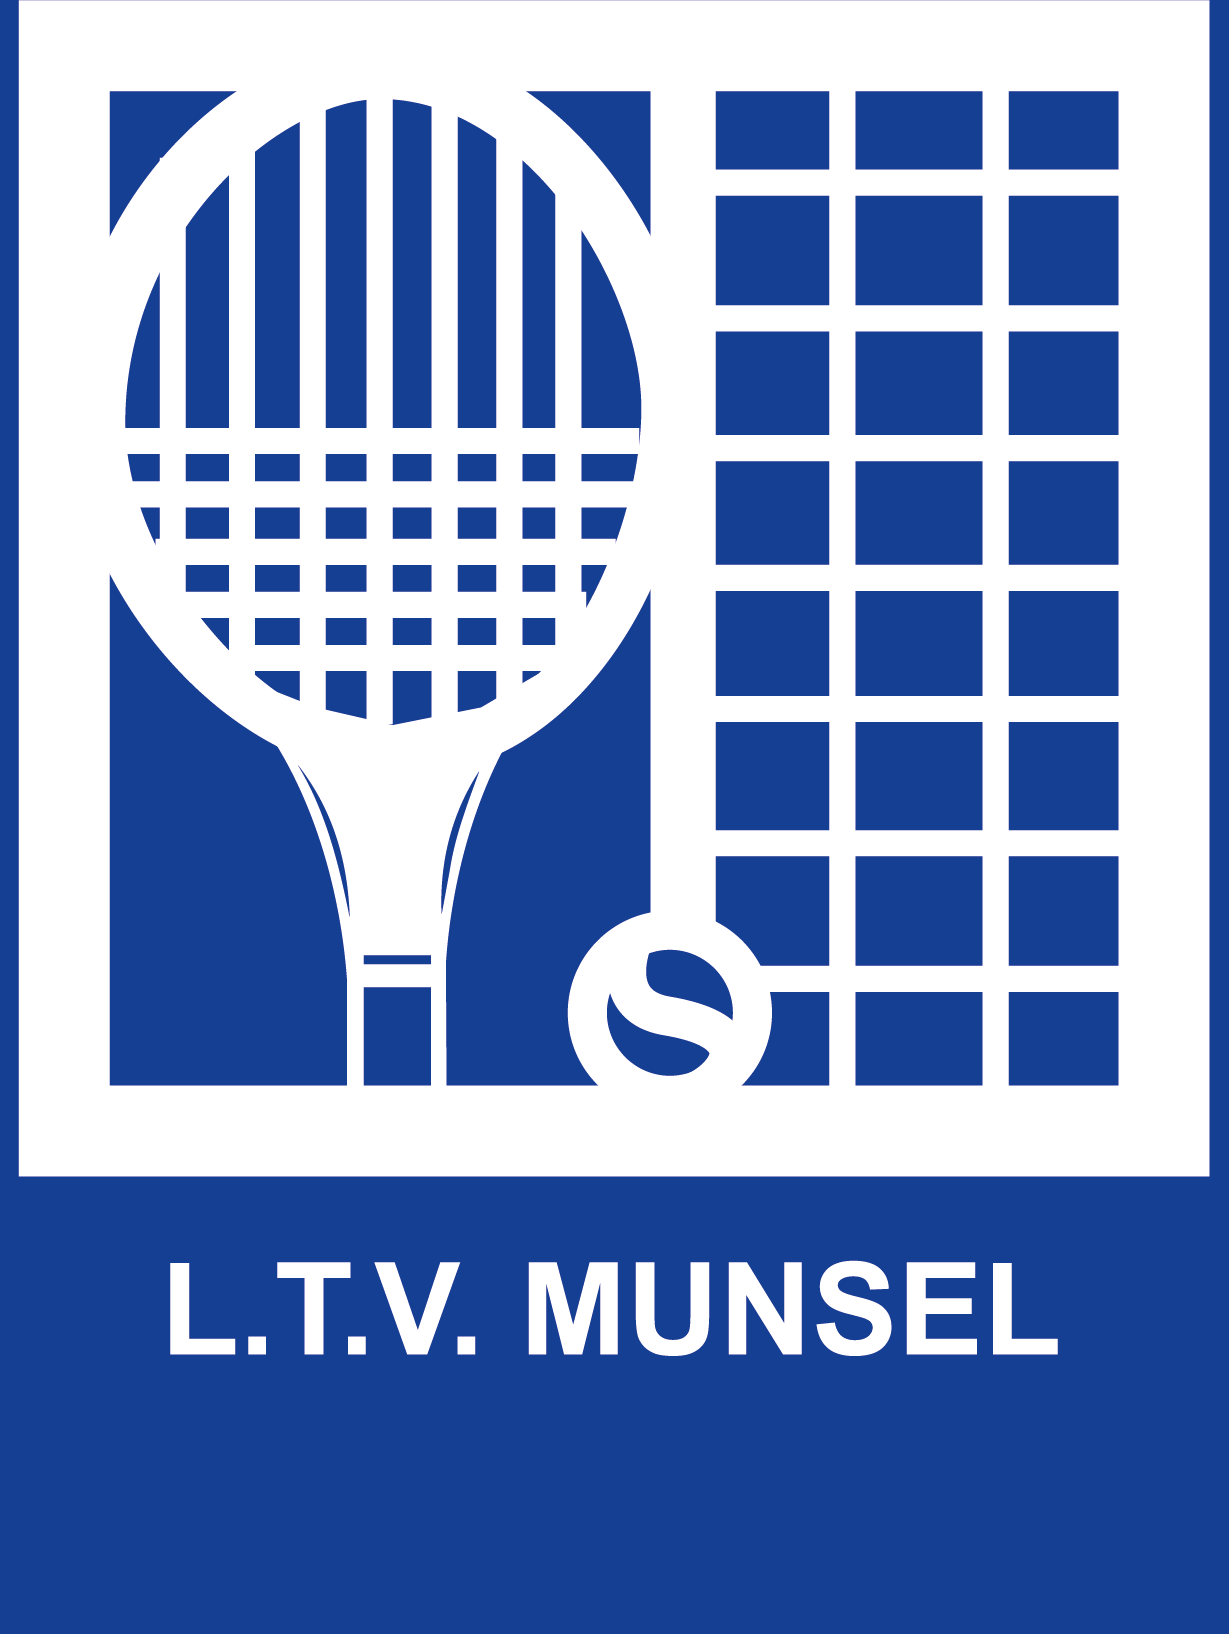 L.T.V. Munsel